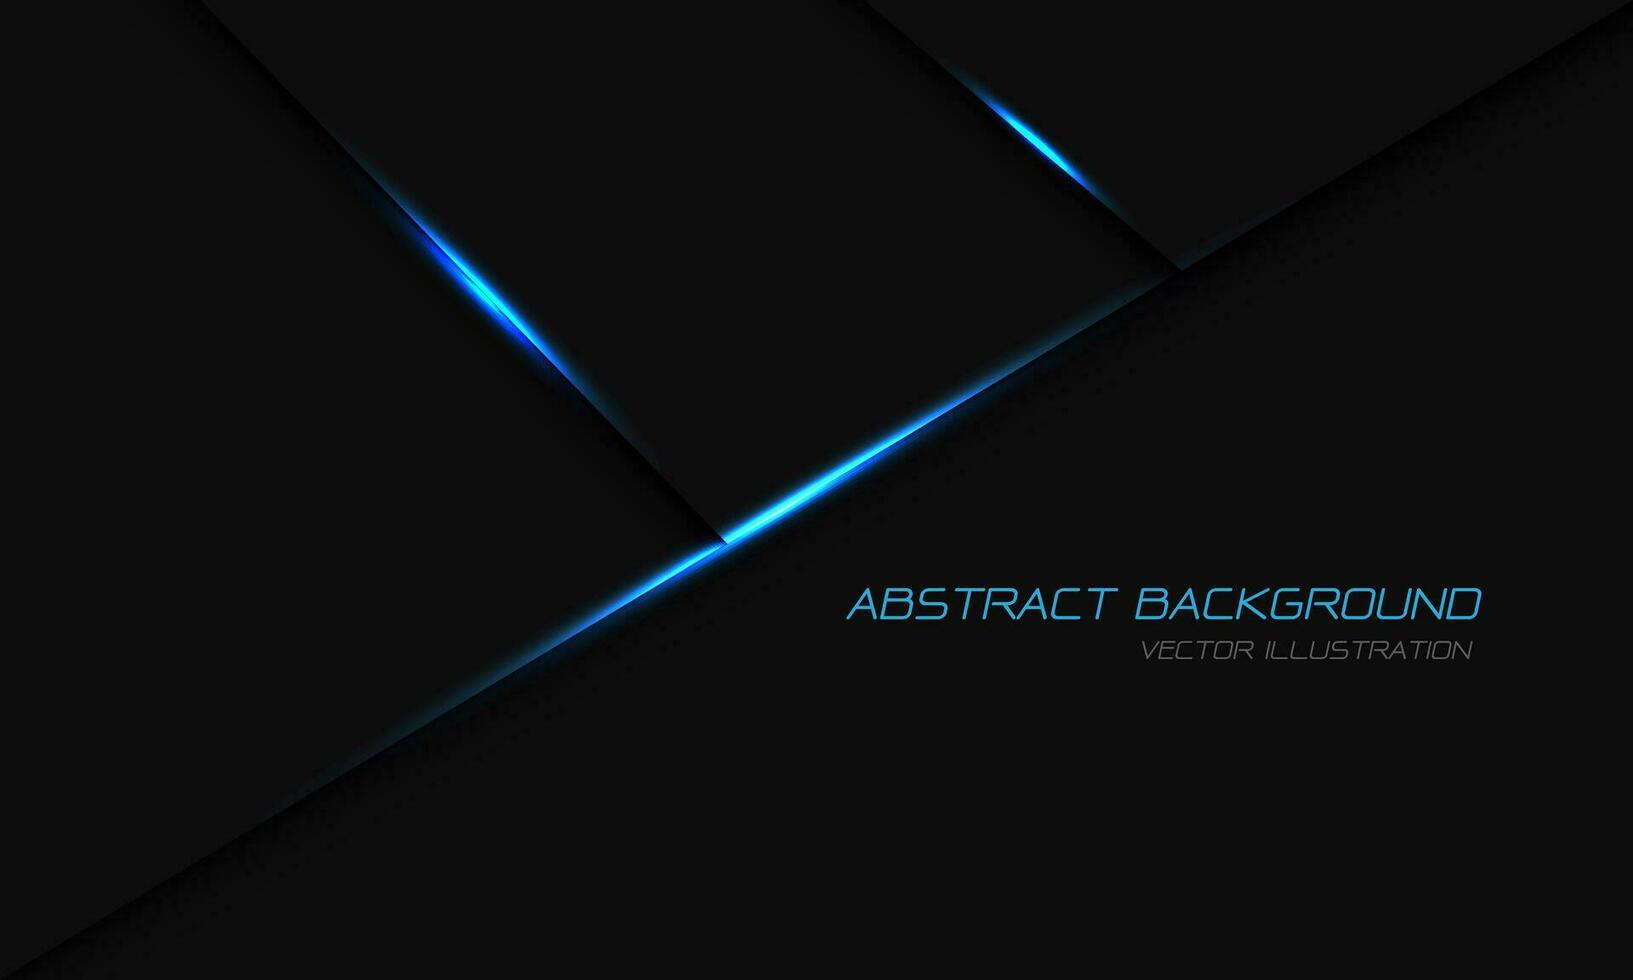 abstract donker grijs metalen blauw licht meetkundig met gemakkelijk tekst ontwerp modern luxe futuristische achtergrond vector